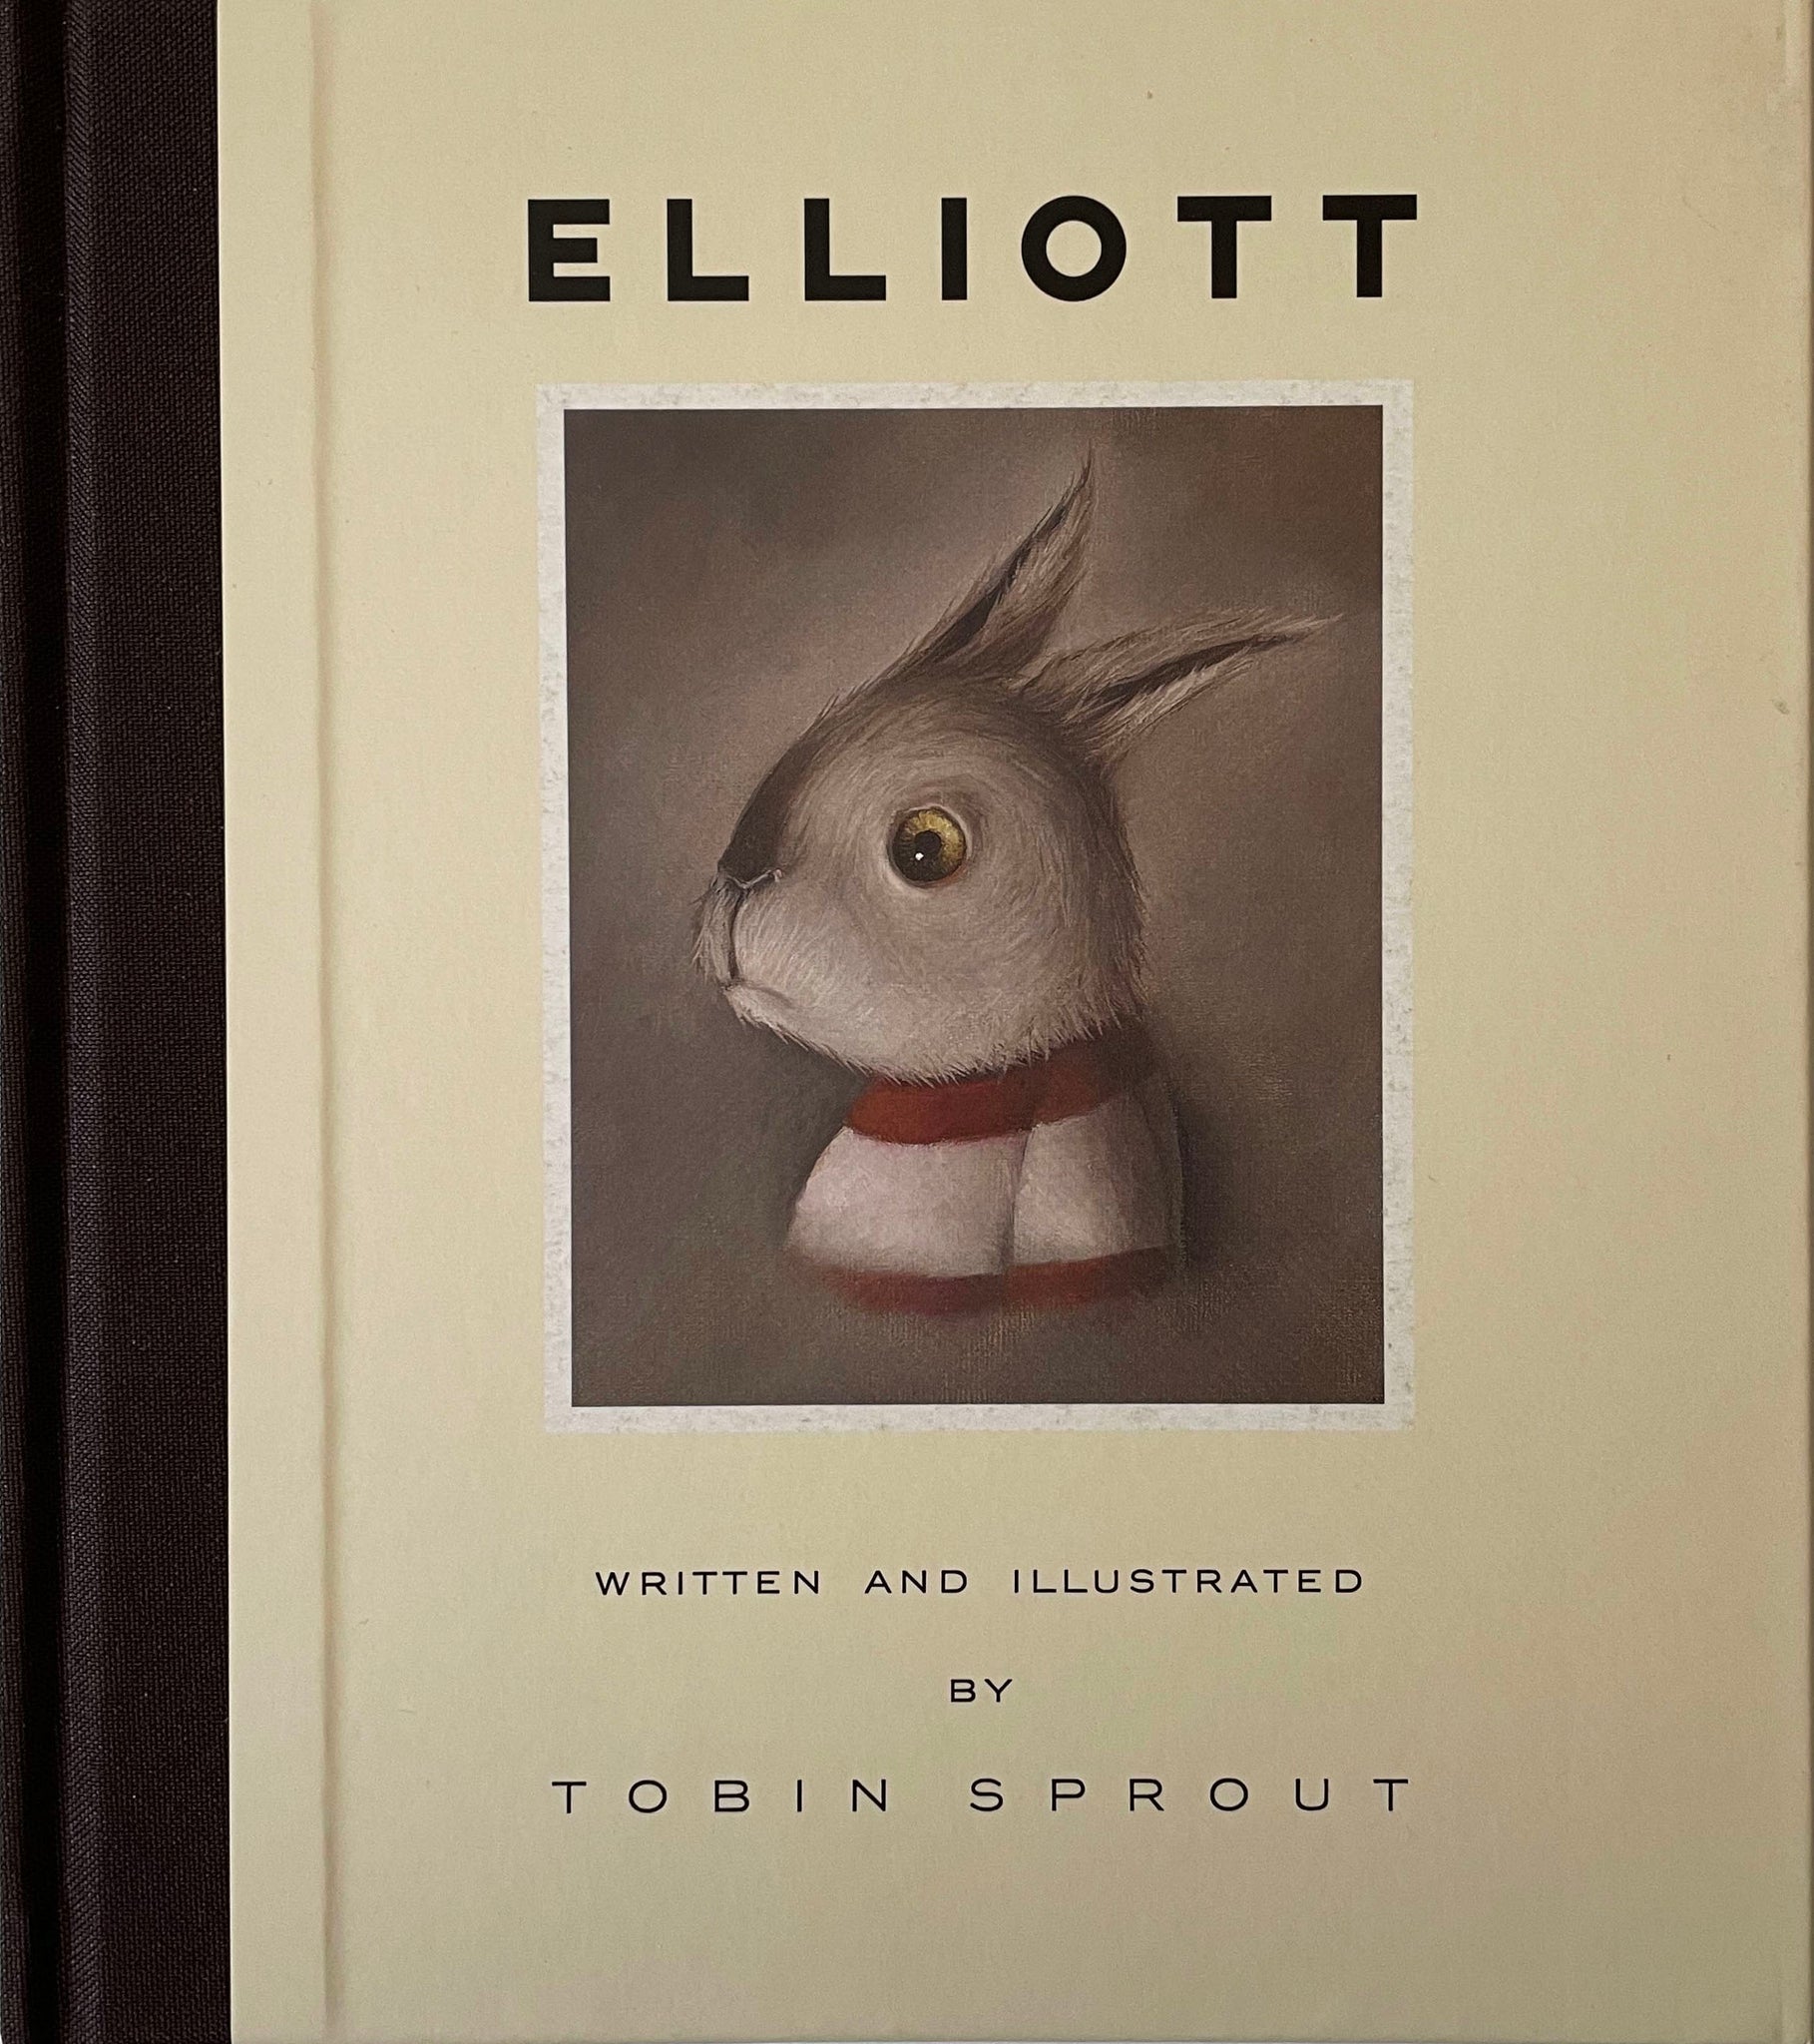 Elliott (Limited Edition) ON SALE